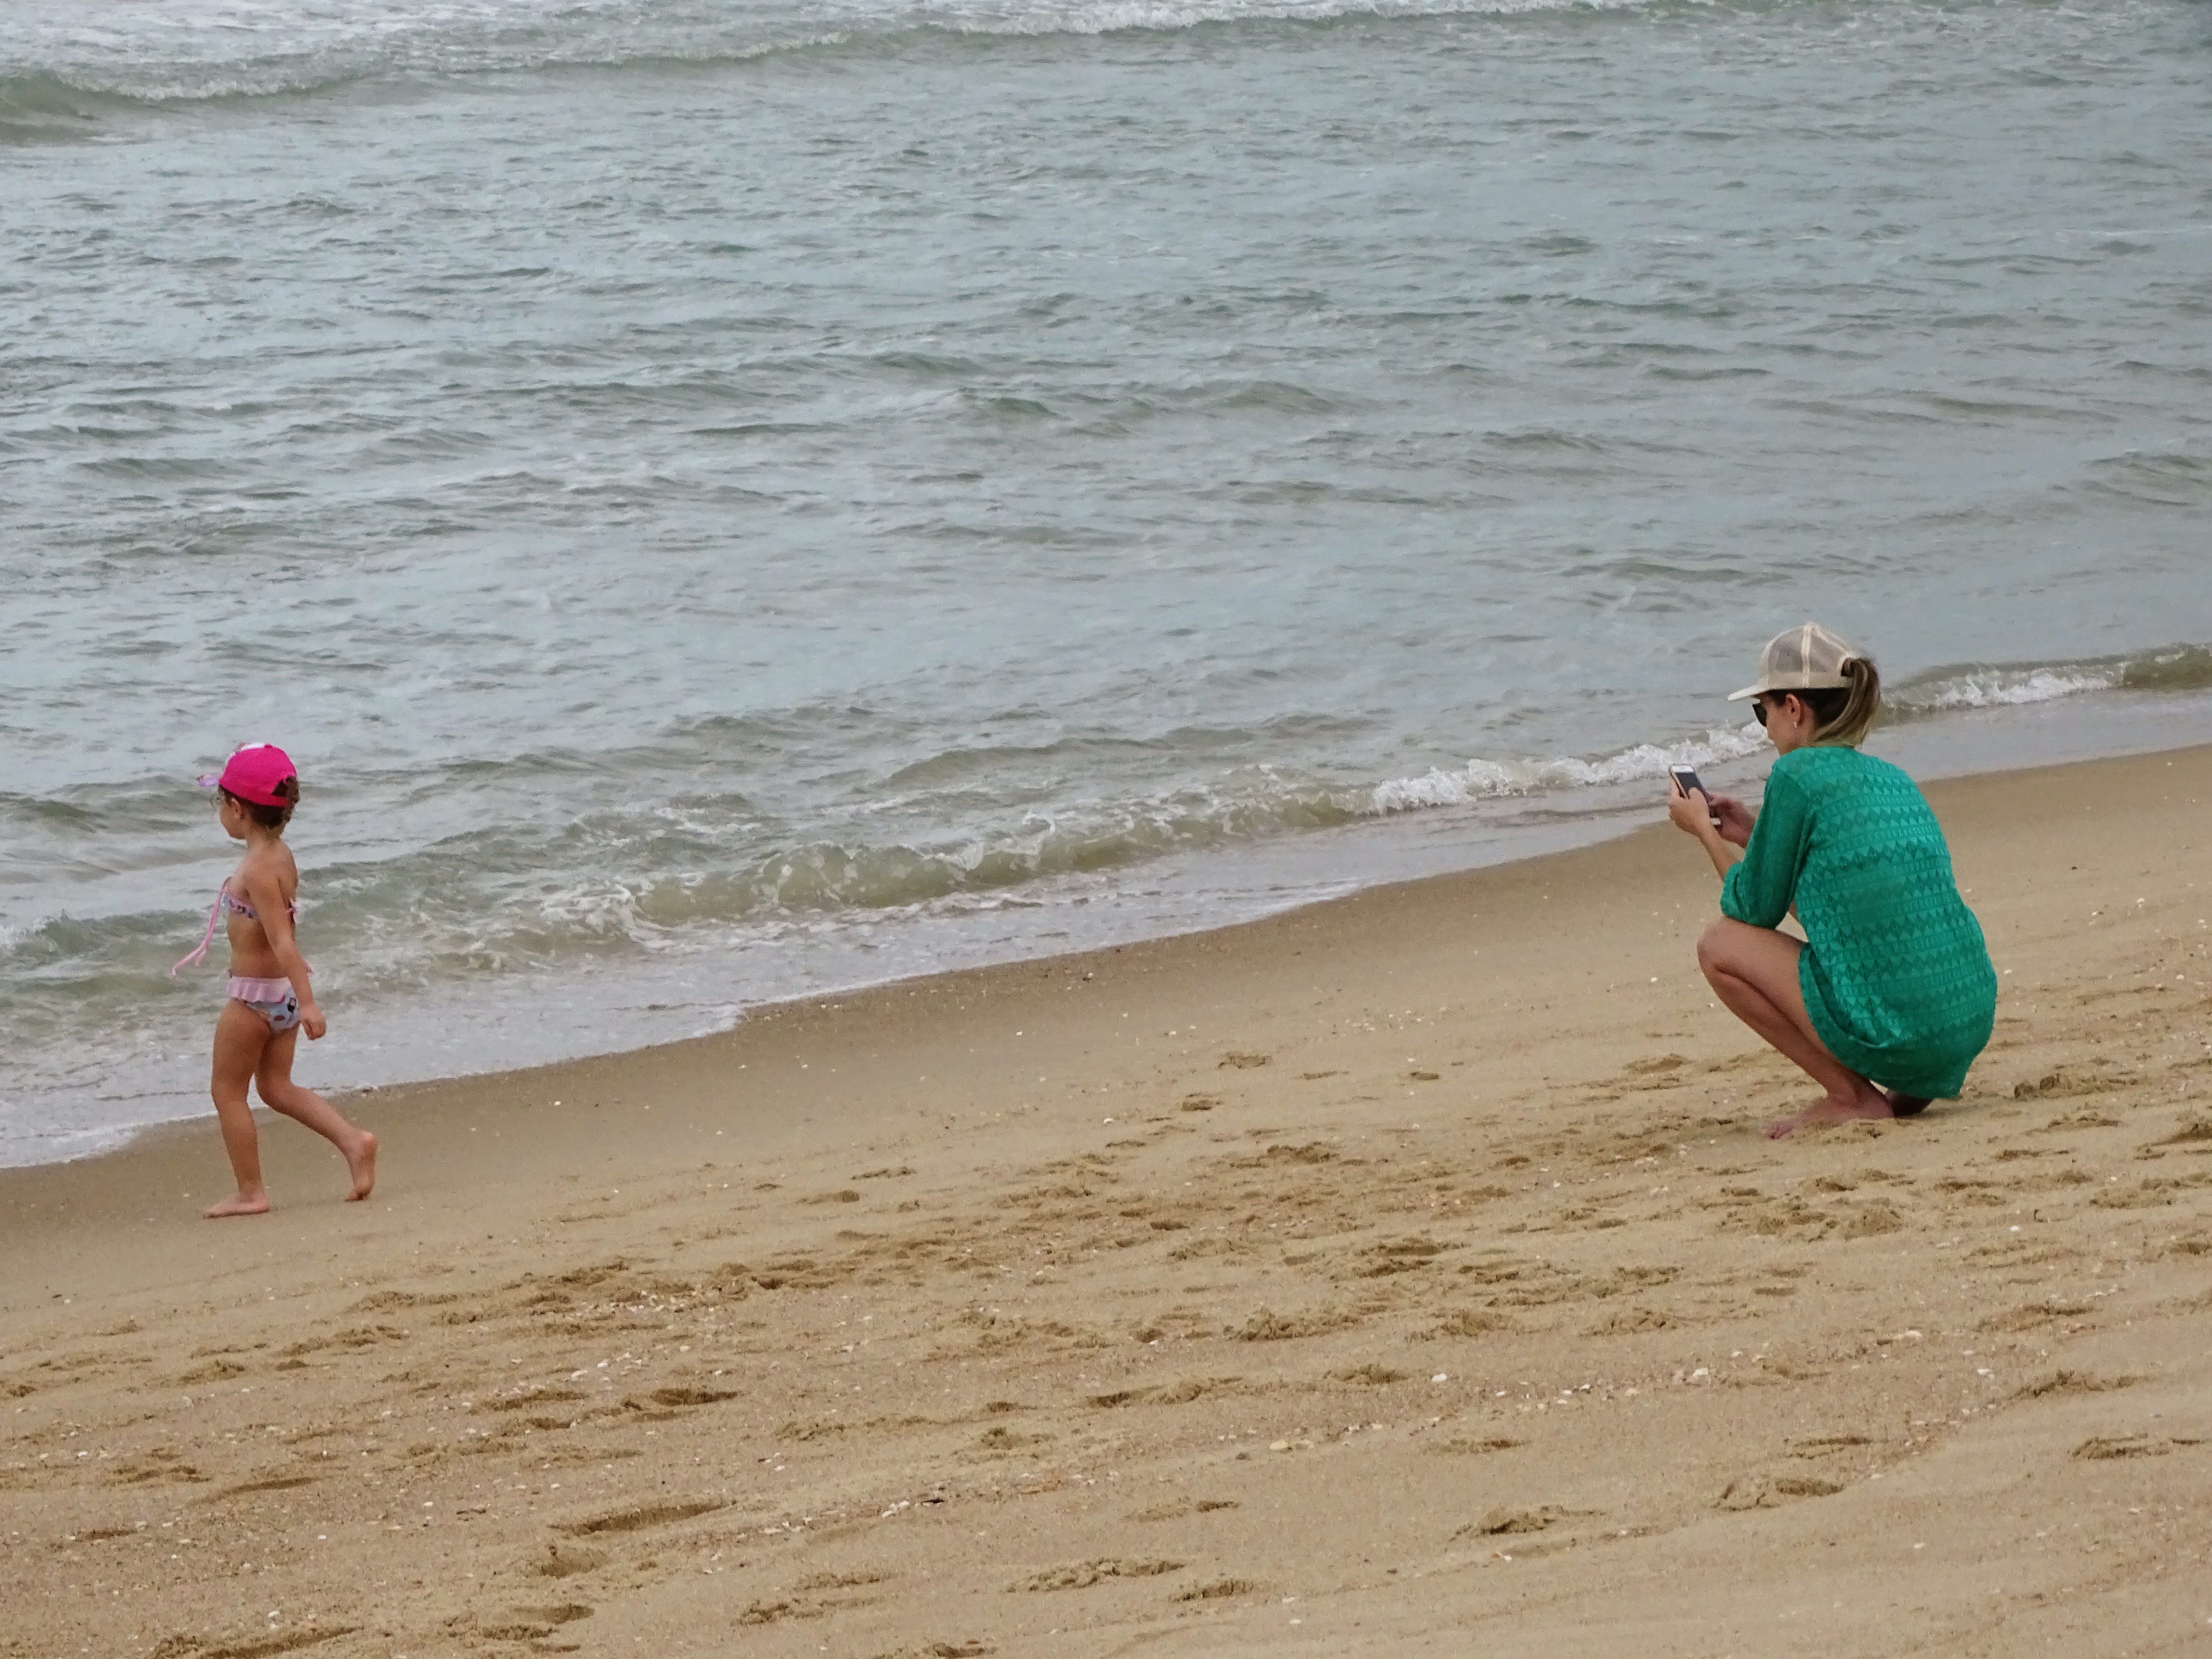 Fotografia de mulher observando uma criança brincando na praia, próxima ao mar